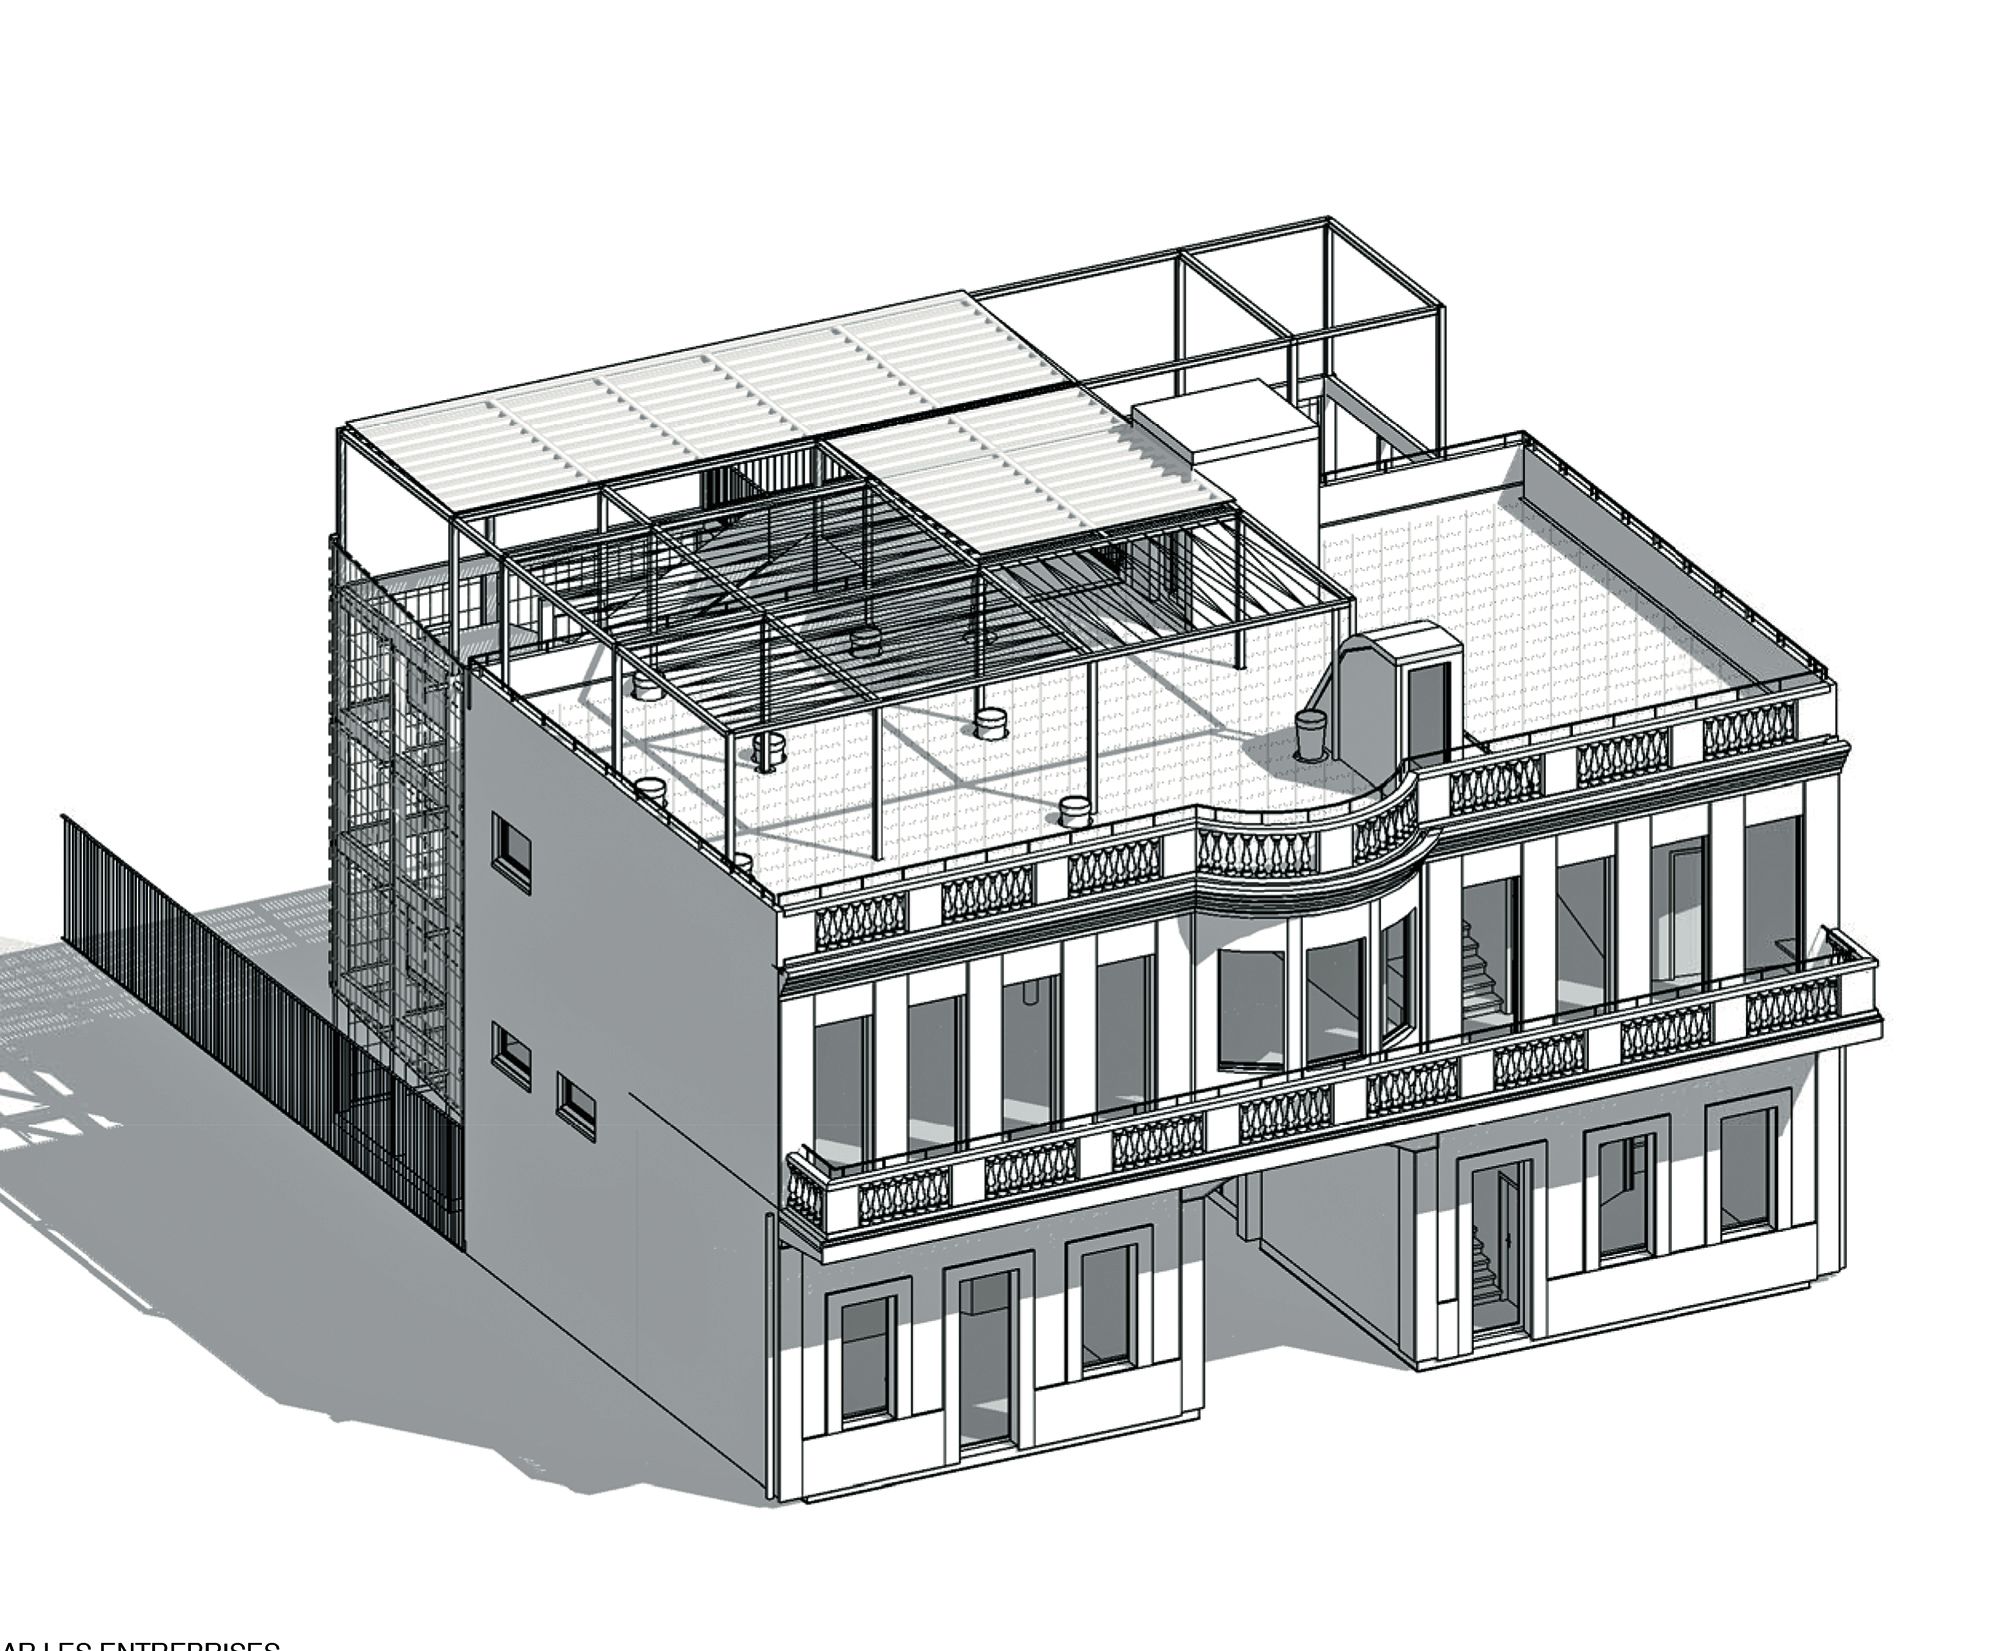 D’ici 2020, l’immeuble Cheval doit être converti en R+2, avec une grande salle de fête, une terrasse et une placette destinée à recevoir un marché hebdomadaire. Illustration Alain Varichon